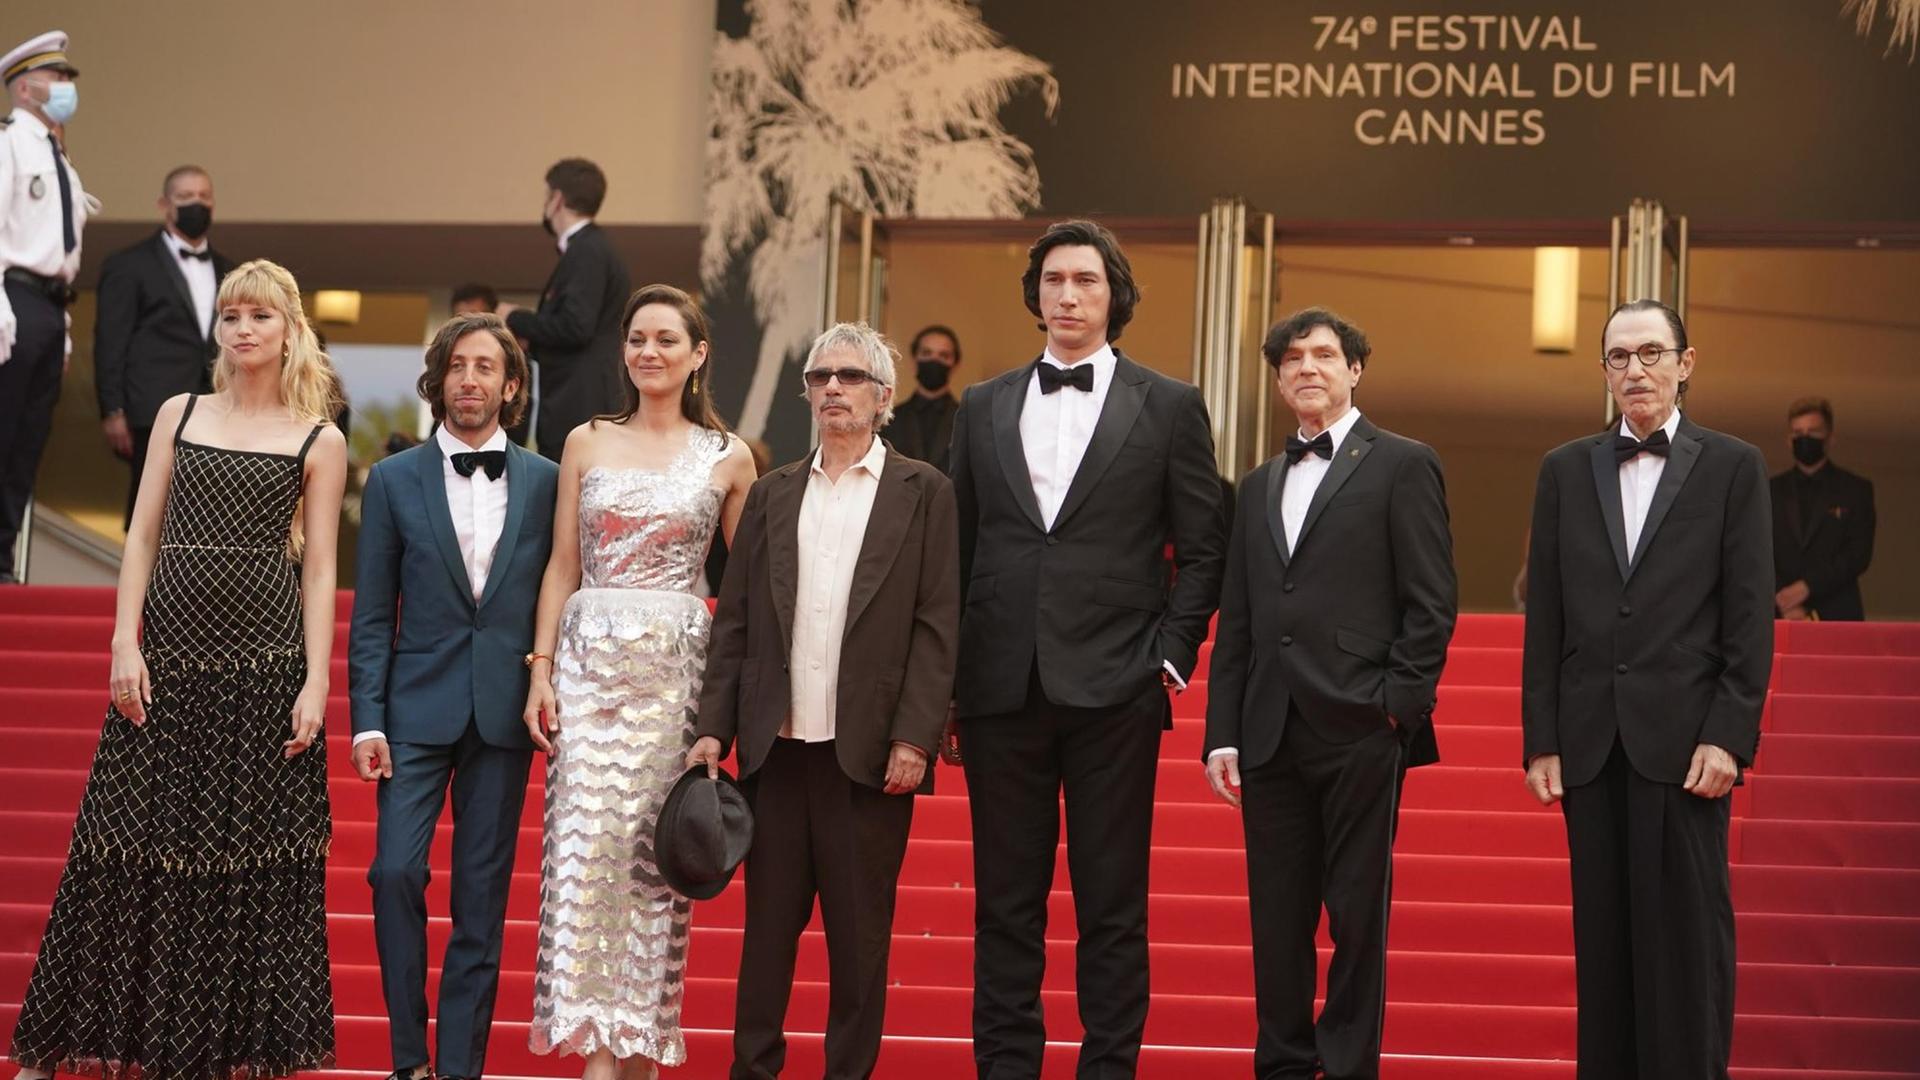 Die Mitwirkenden des Films "Annette" in Cannes auf dem roten Teppich; von links nach rechts: Simon Helberg, Marion Cotillard, Regisseur Leos Carax, Adam Driver und die Drehbuchautoren Russell und Ron Mael.